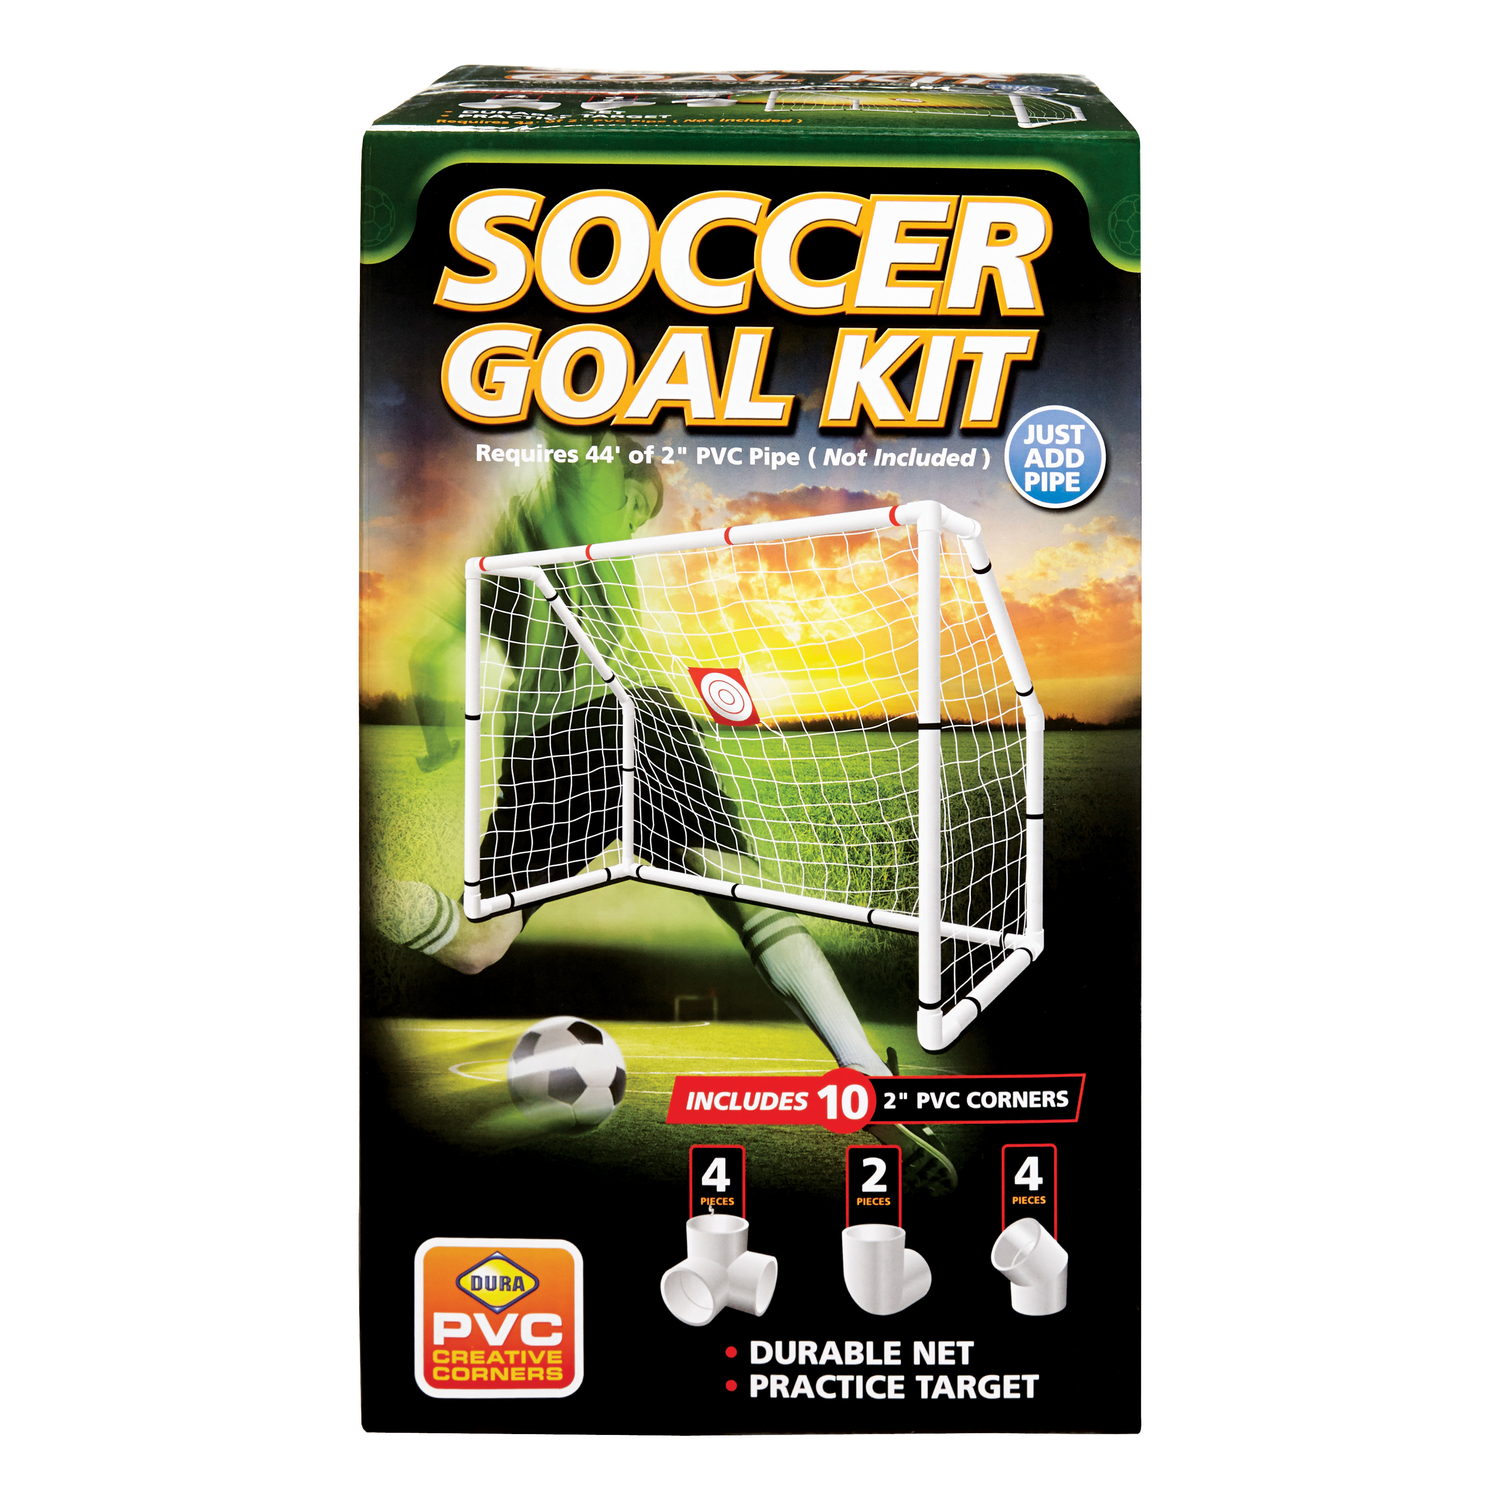 UPC 049081002701 product image for Dura Plastic Soccer Goal Kit (SGK) | upcitemdb.com